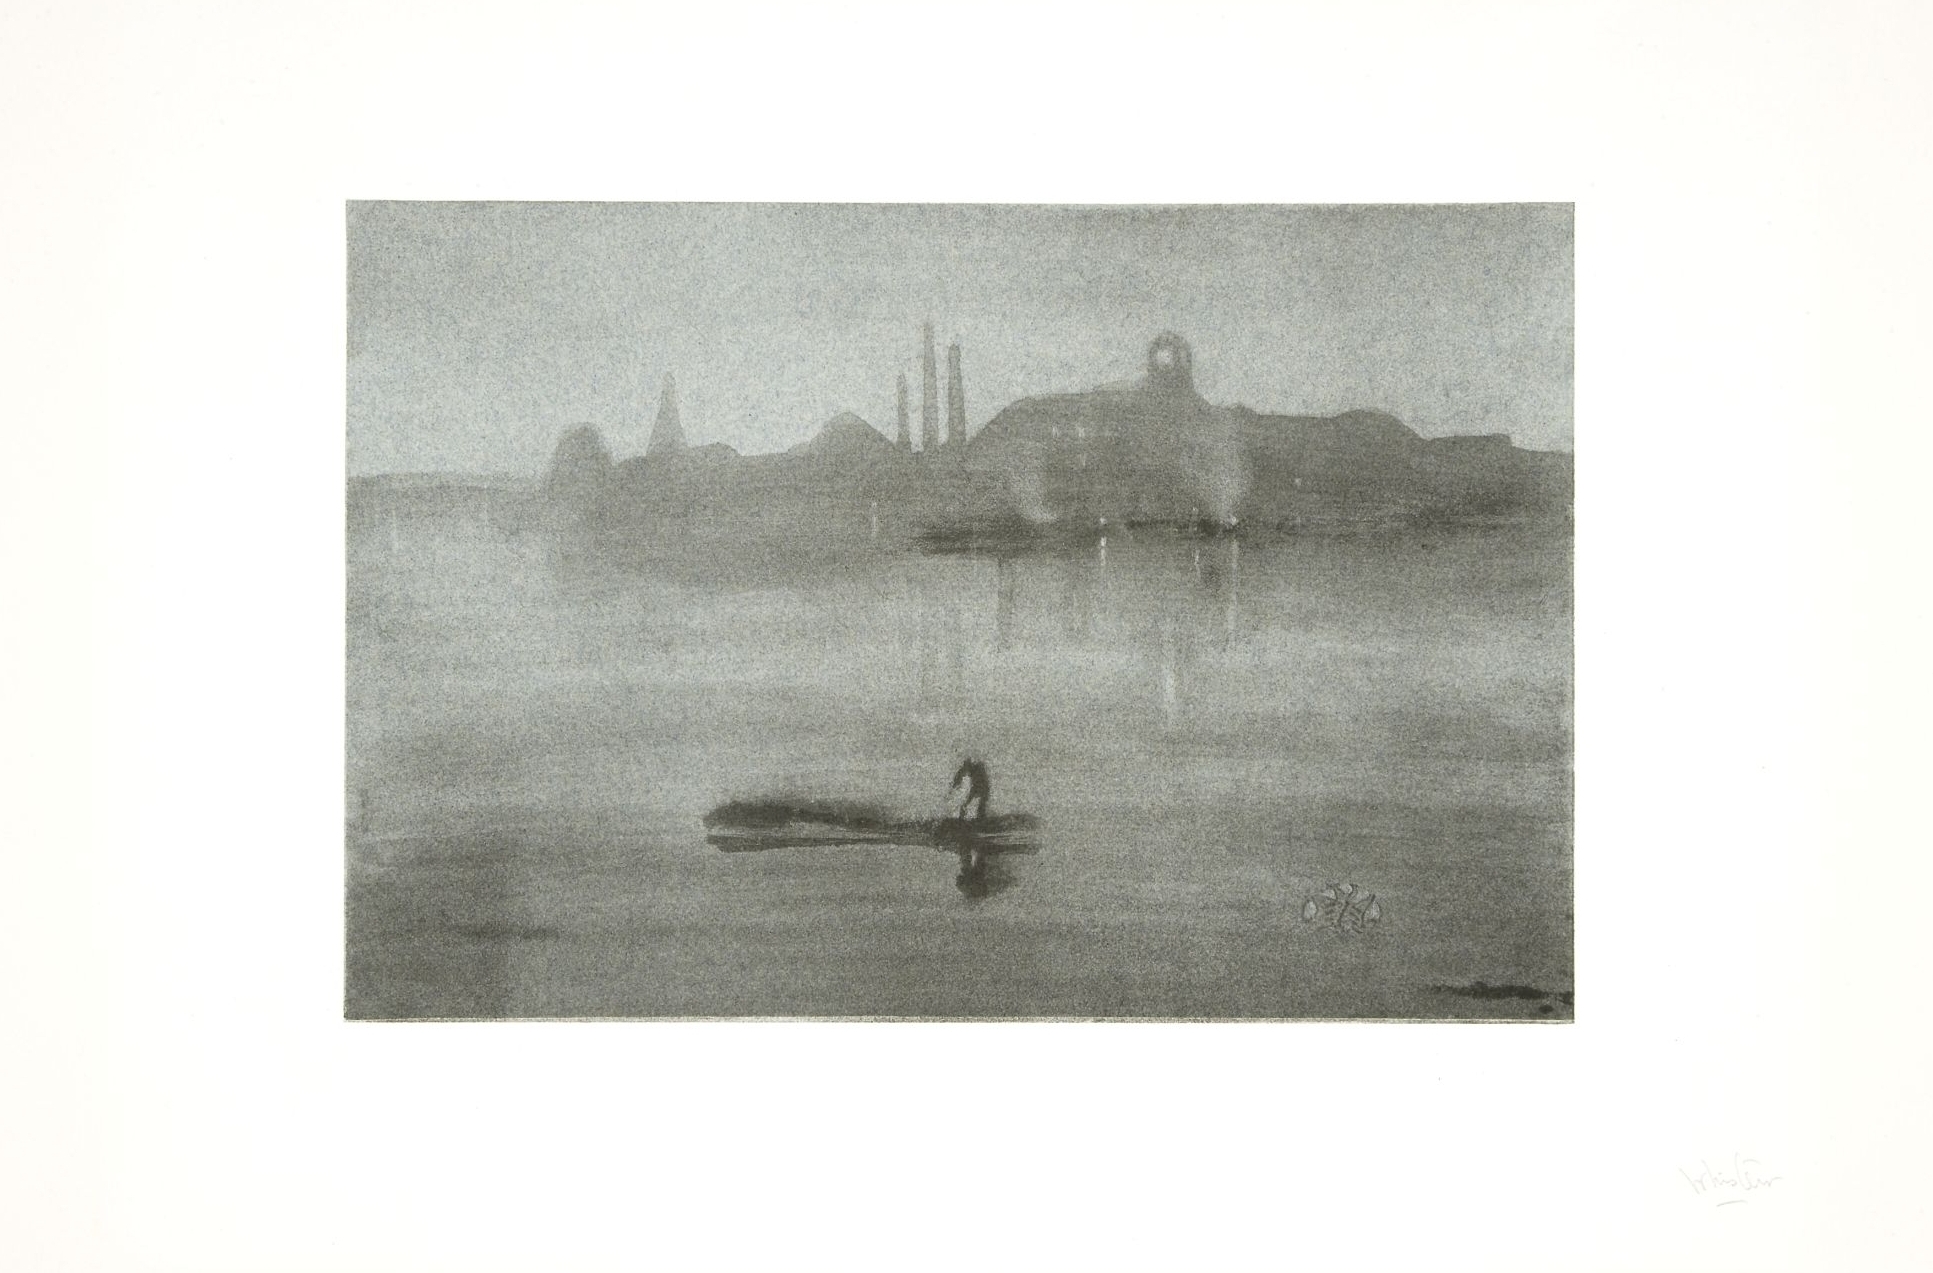 James Abbott McNeill Whistler's Nocturne